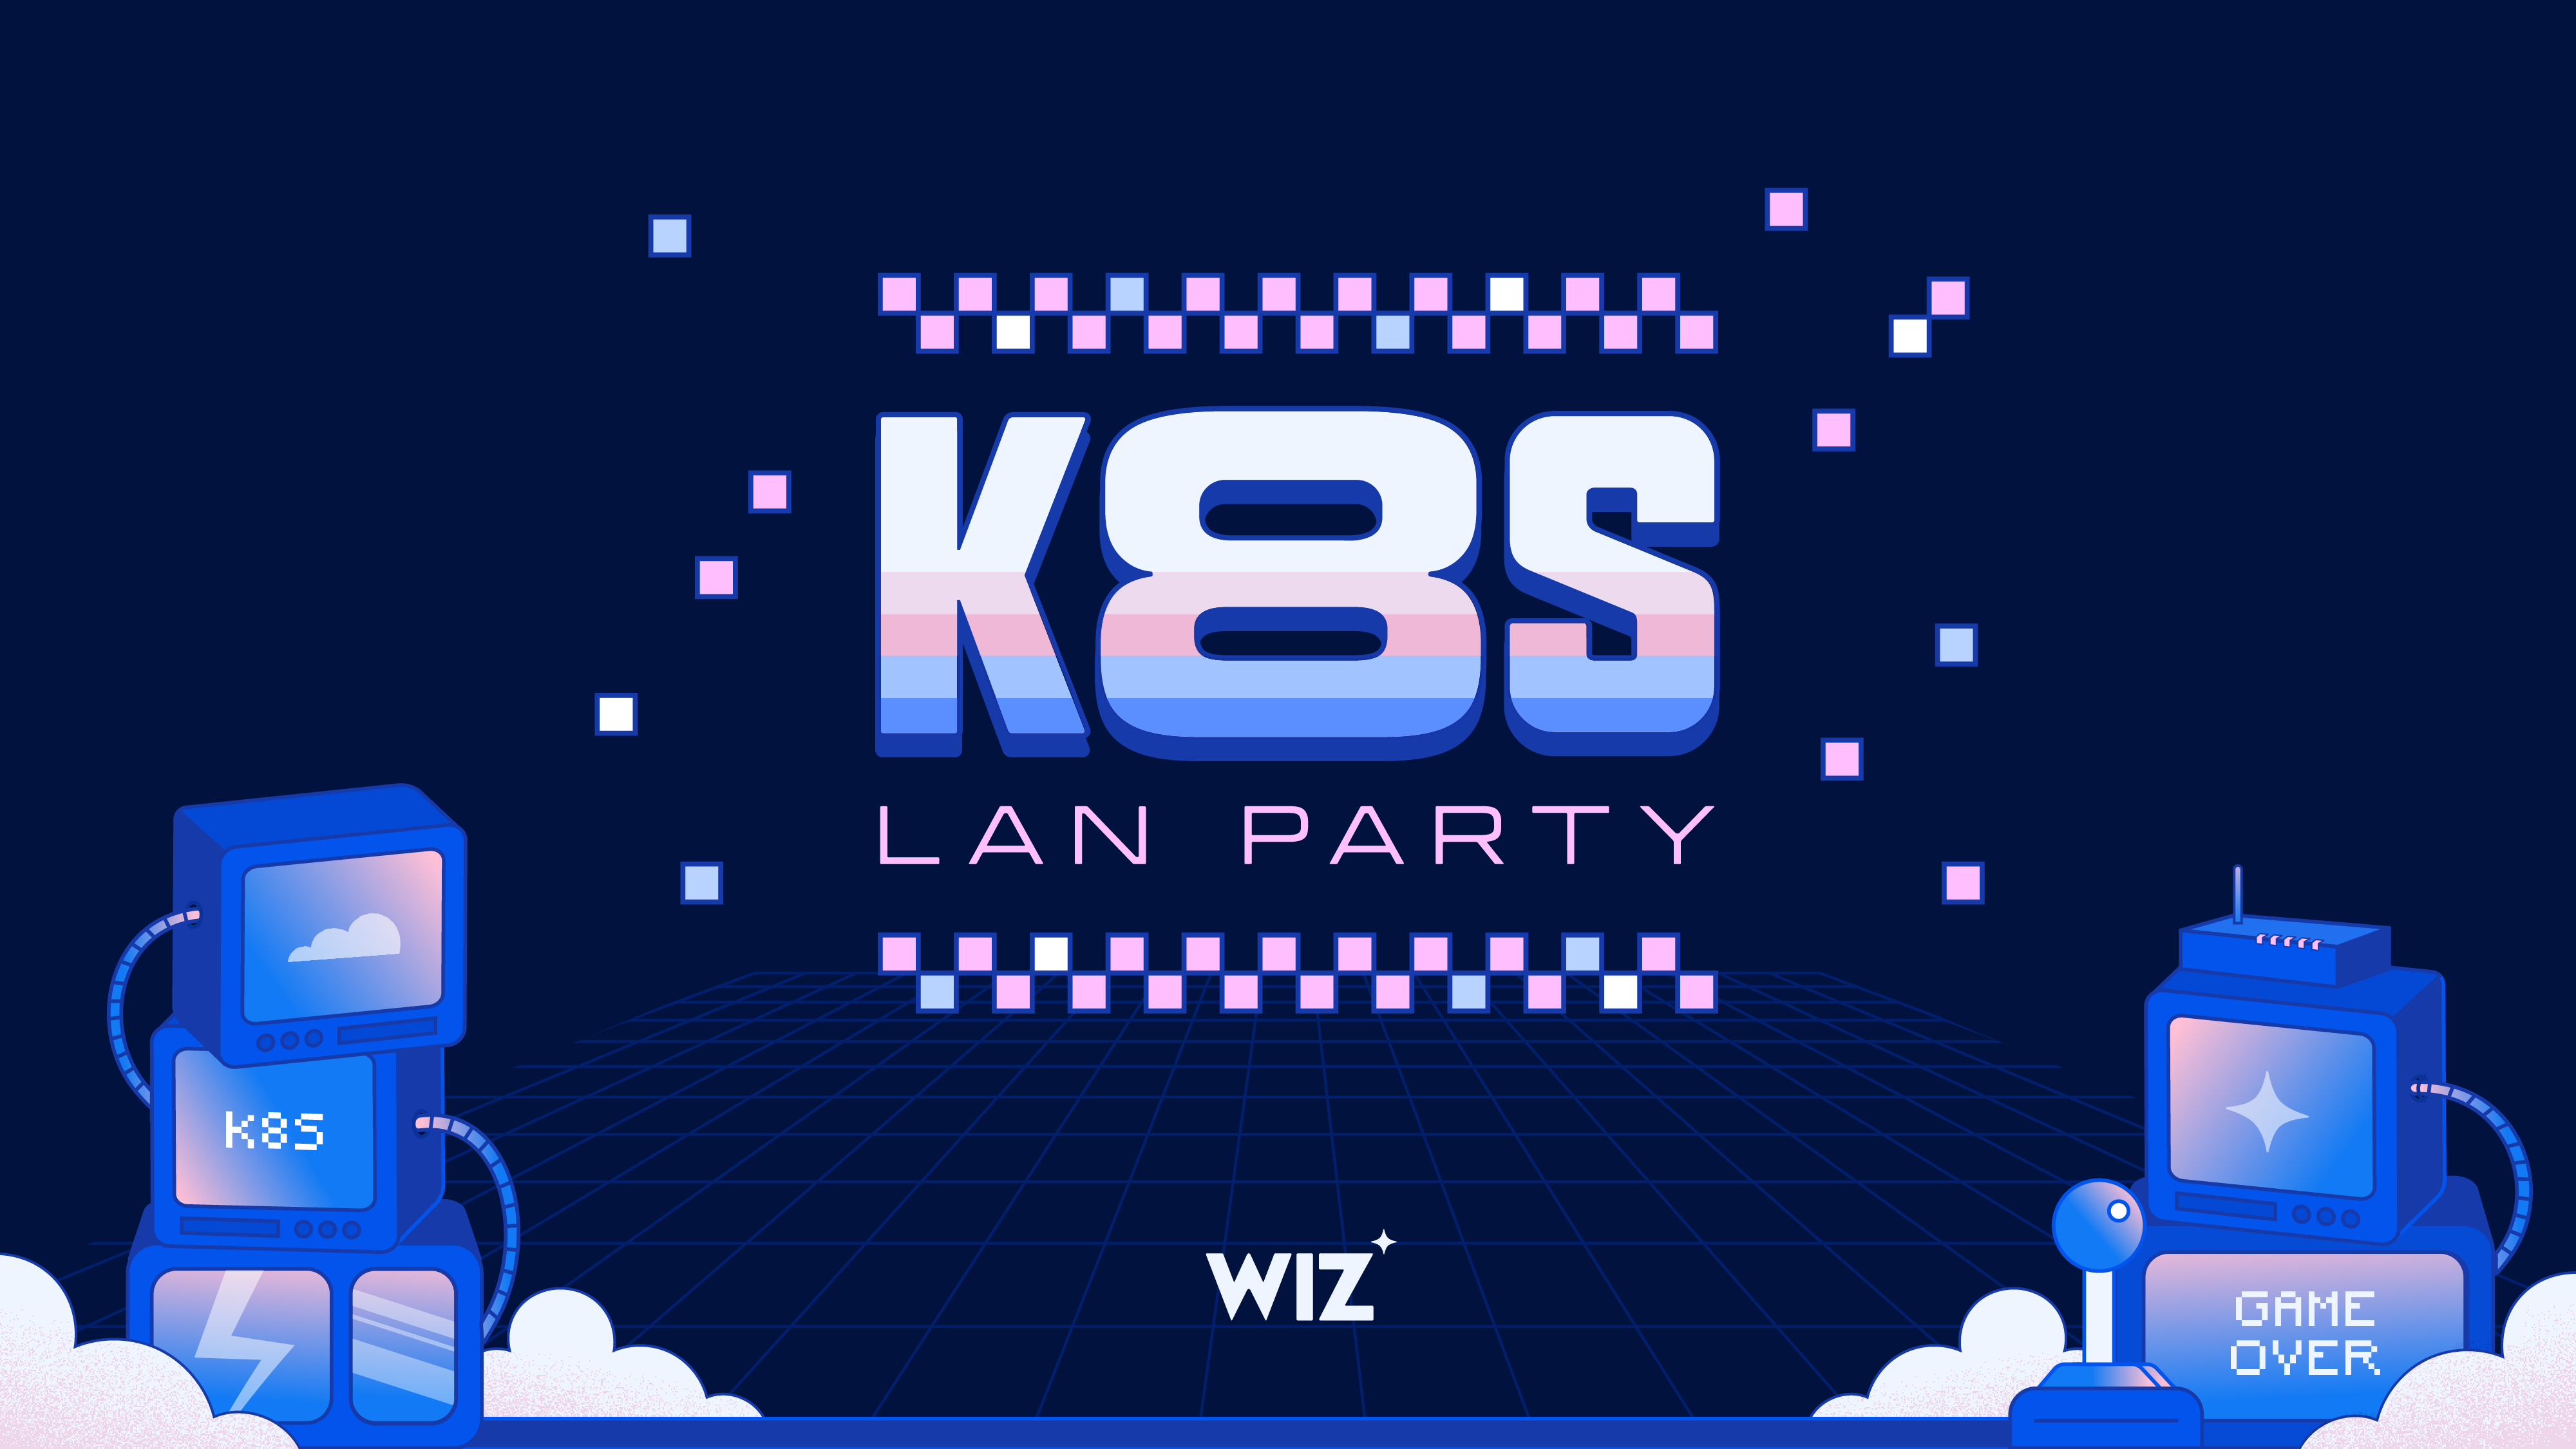 K8s LAN Party